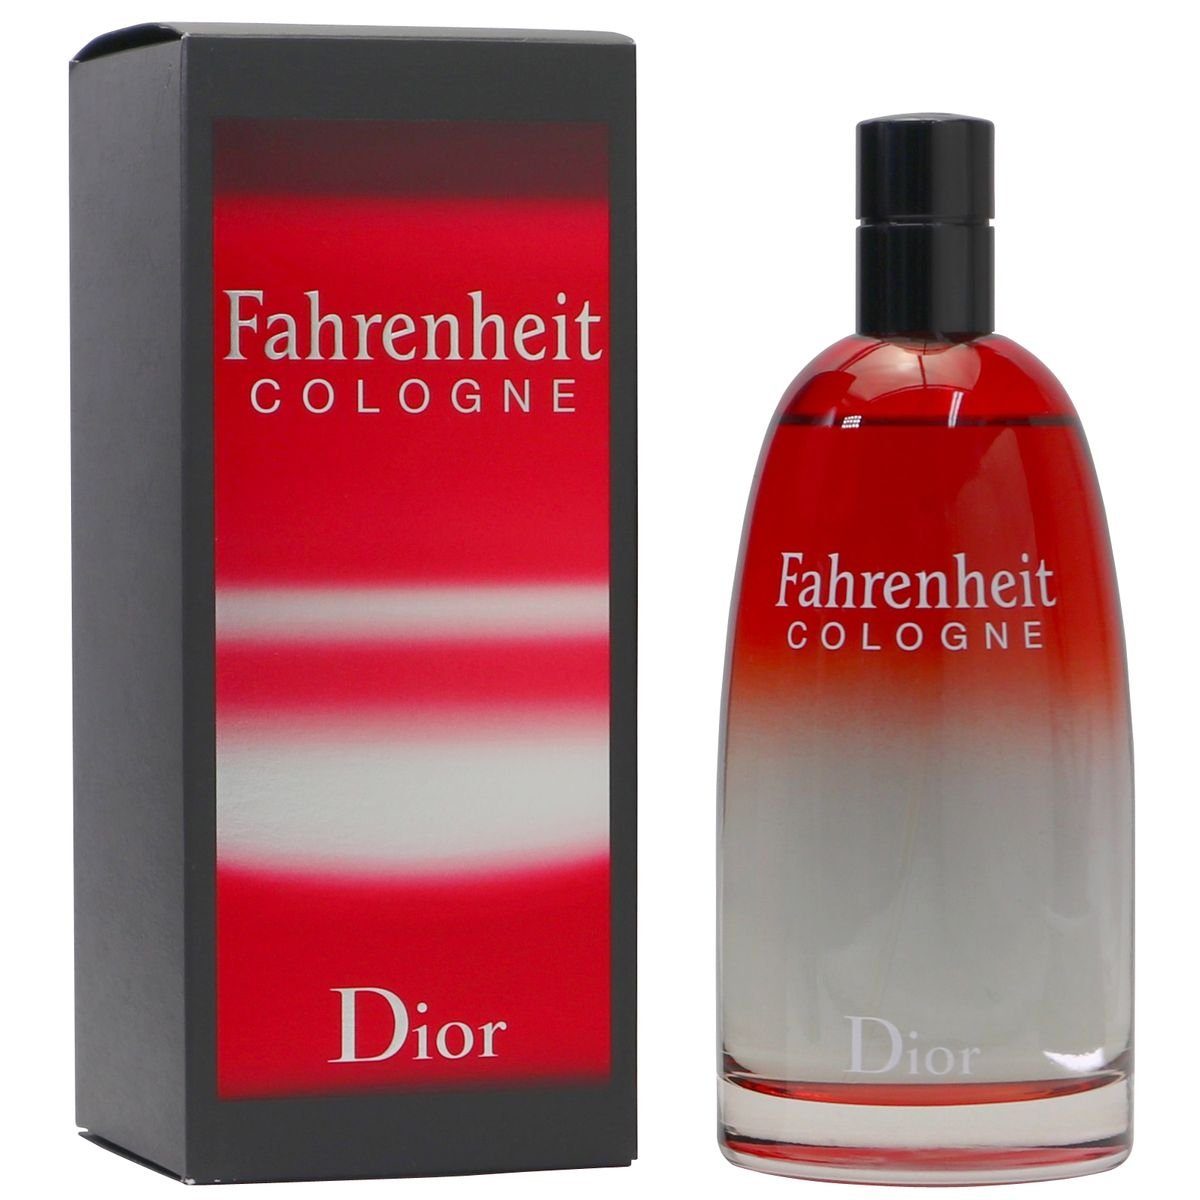 Dior Eau Dior Spray Cologne de ml 200 Christian Fahrenheit Cologne